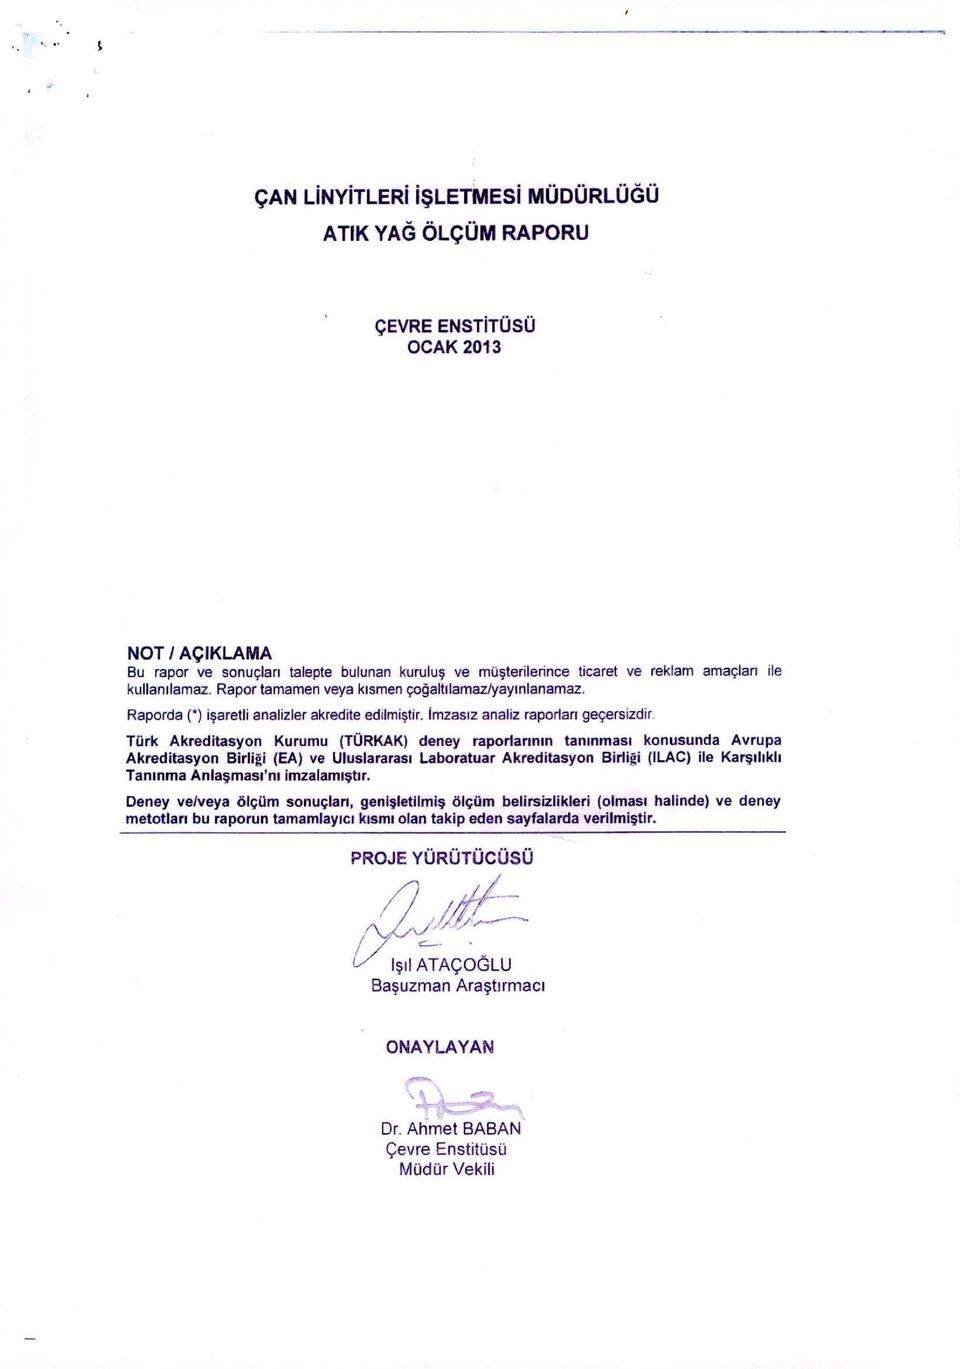 Türk Akreditasyon Kurumu (TÜRKAK) deney raporlarının tanınması konusunda Avrupa Akreditasyon Birli~i (EA) ve Uluslararası Laboratuar Akreditasyon Birli~i (ILAC) ile Karşılıklı Tanınma Anlaşmasılm